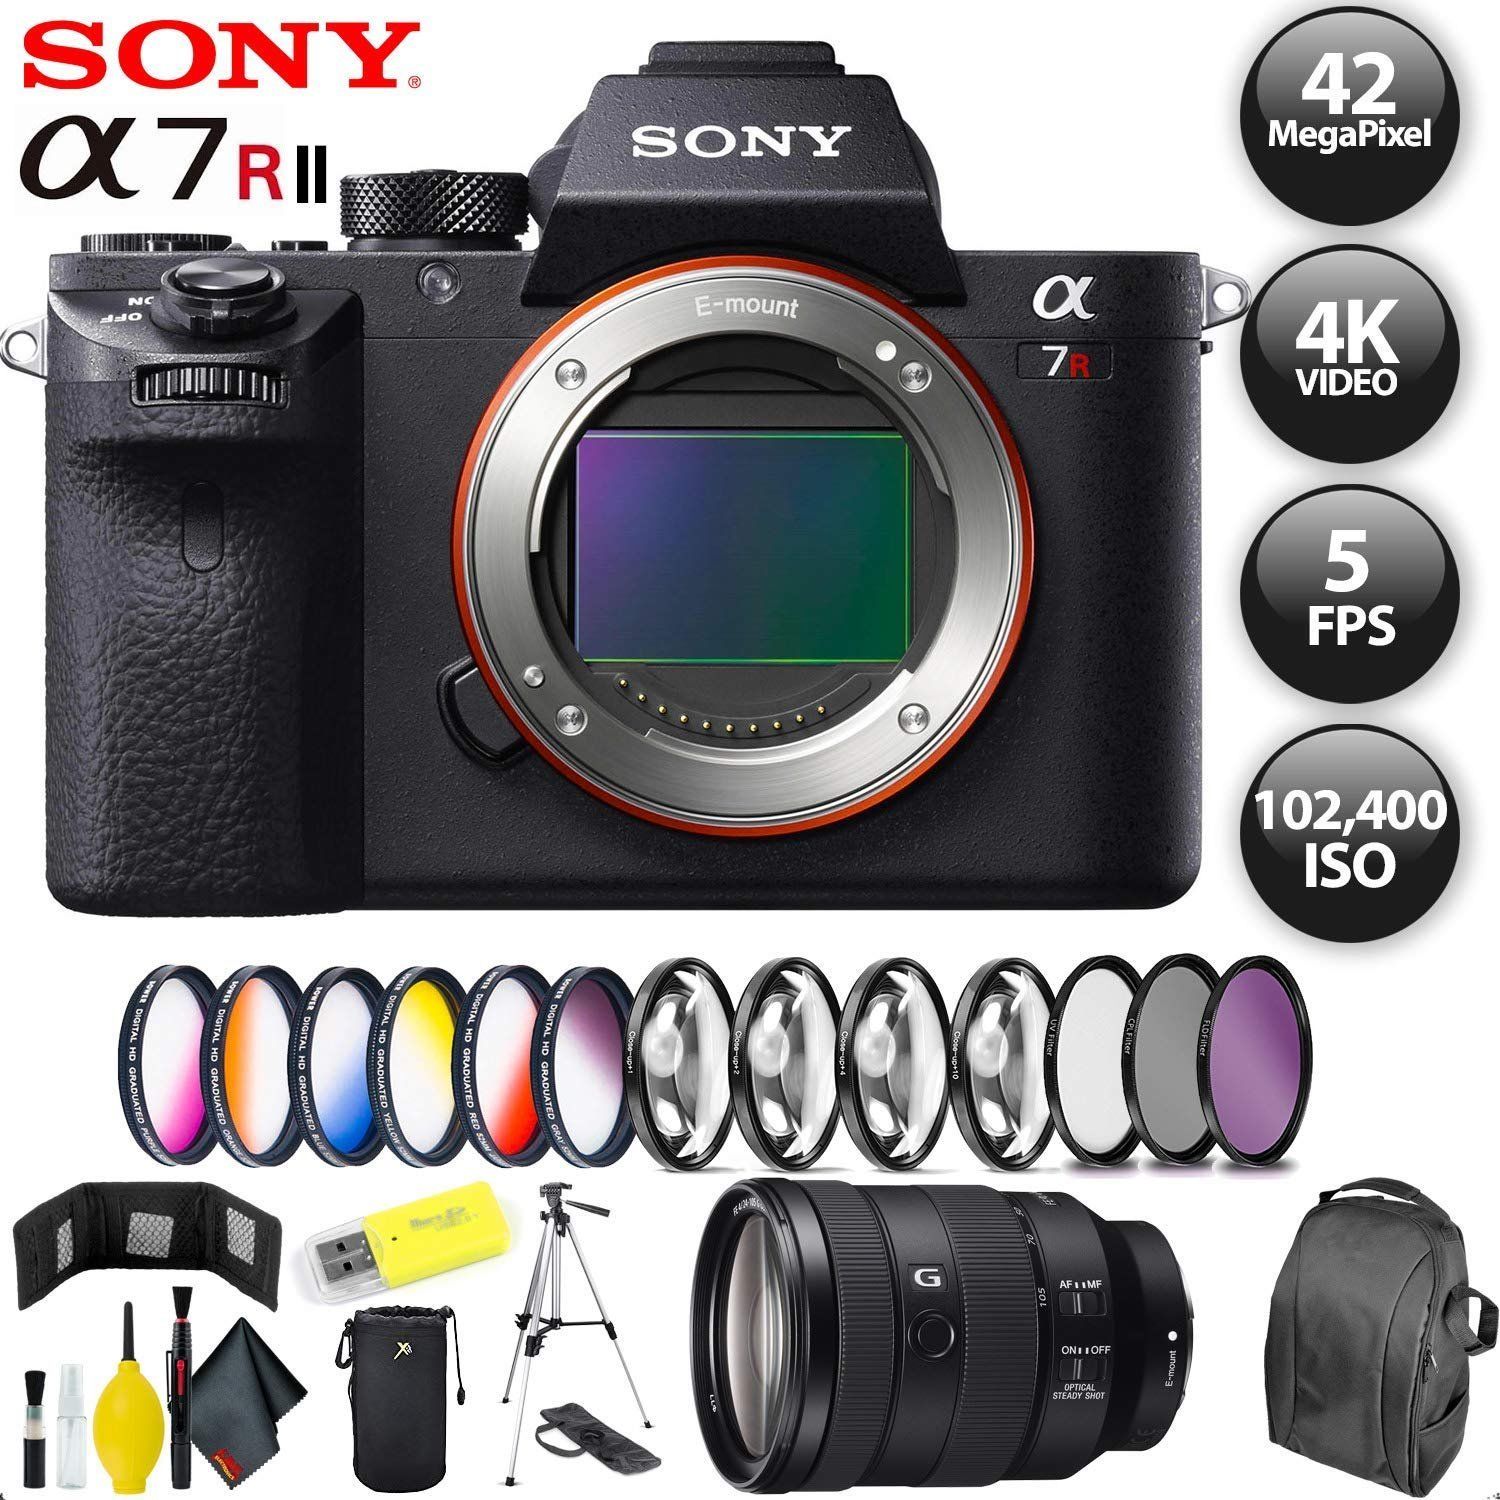 Sony Alpha a7R II Mirrorless Digital Camera + 128GB Memory Card + Sony FE 24-105mm Lens